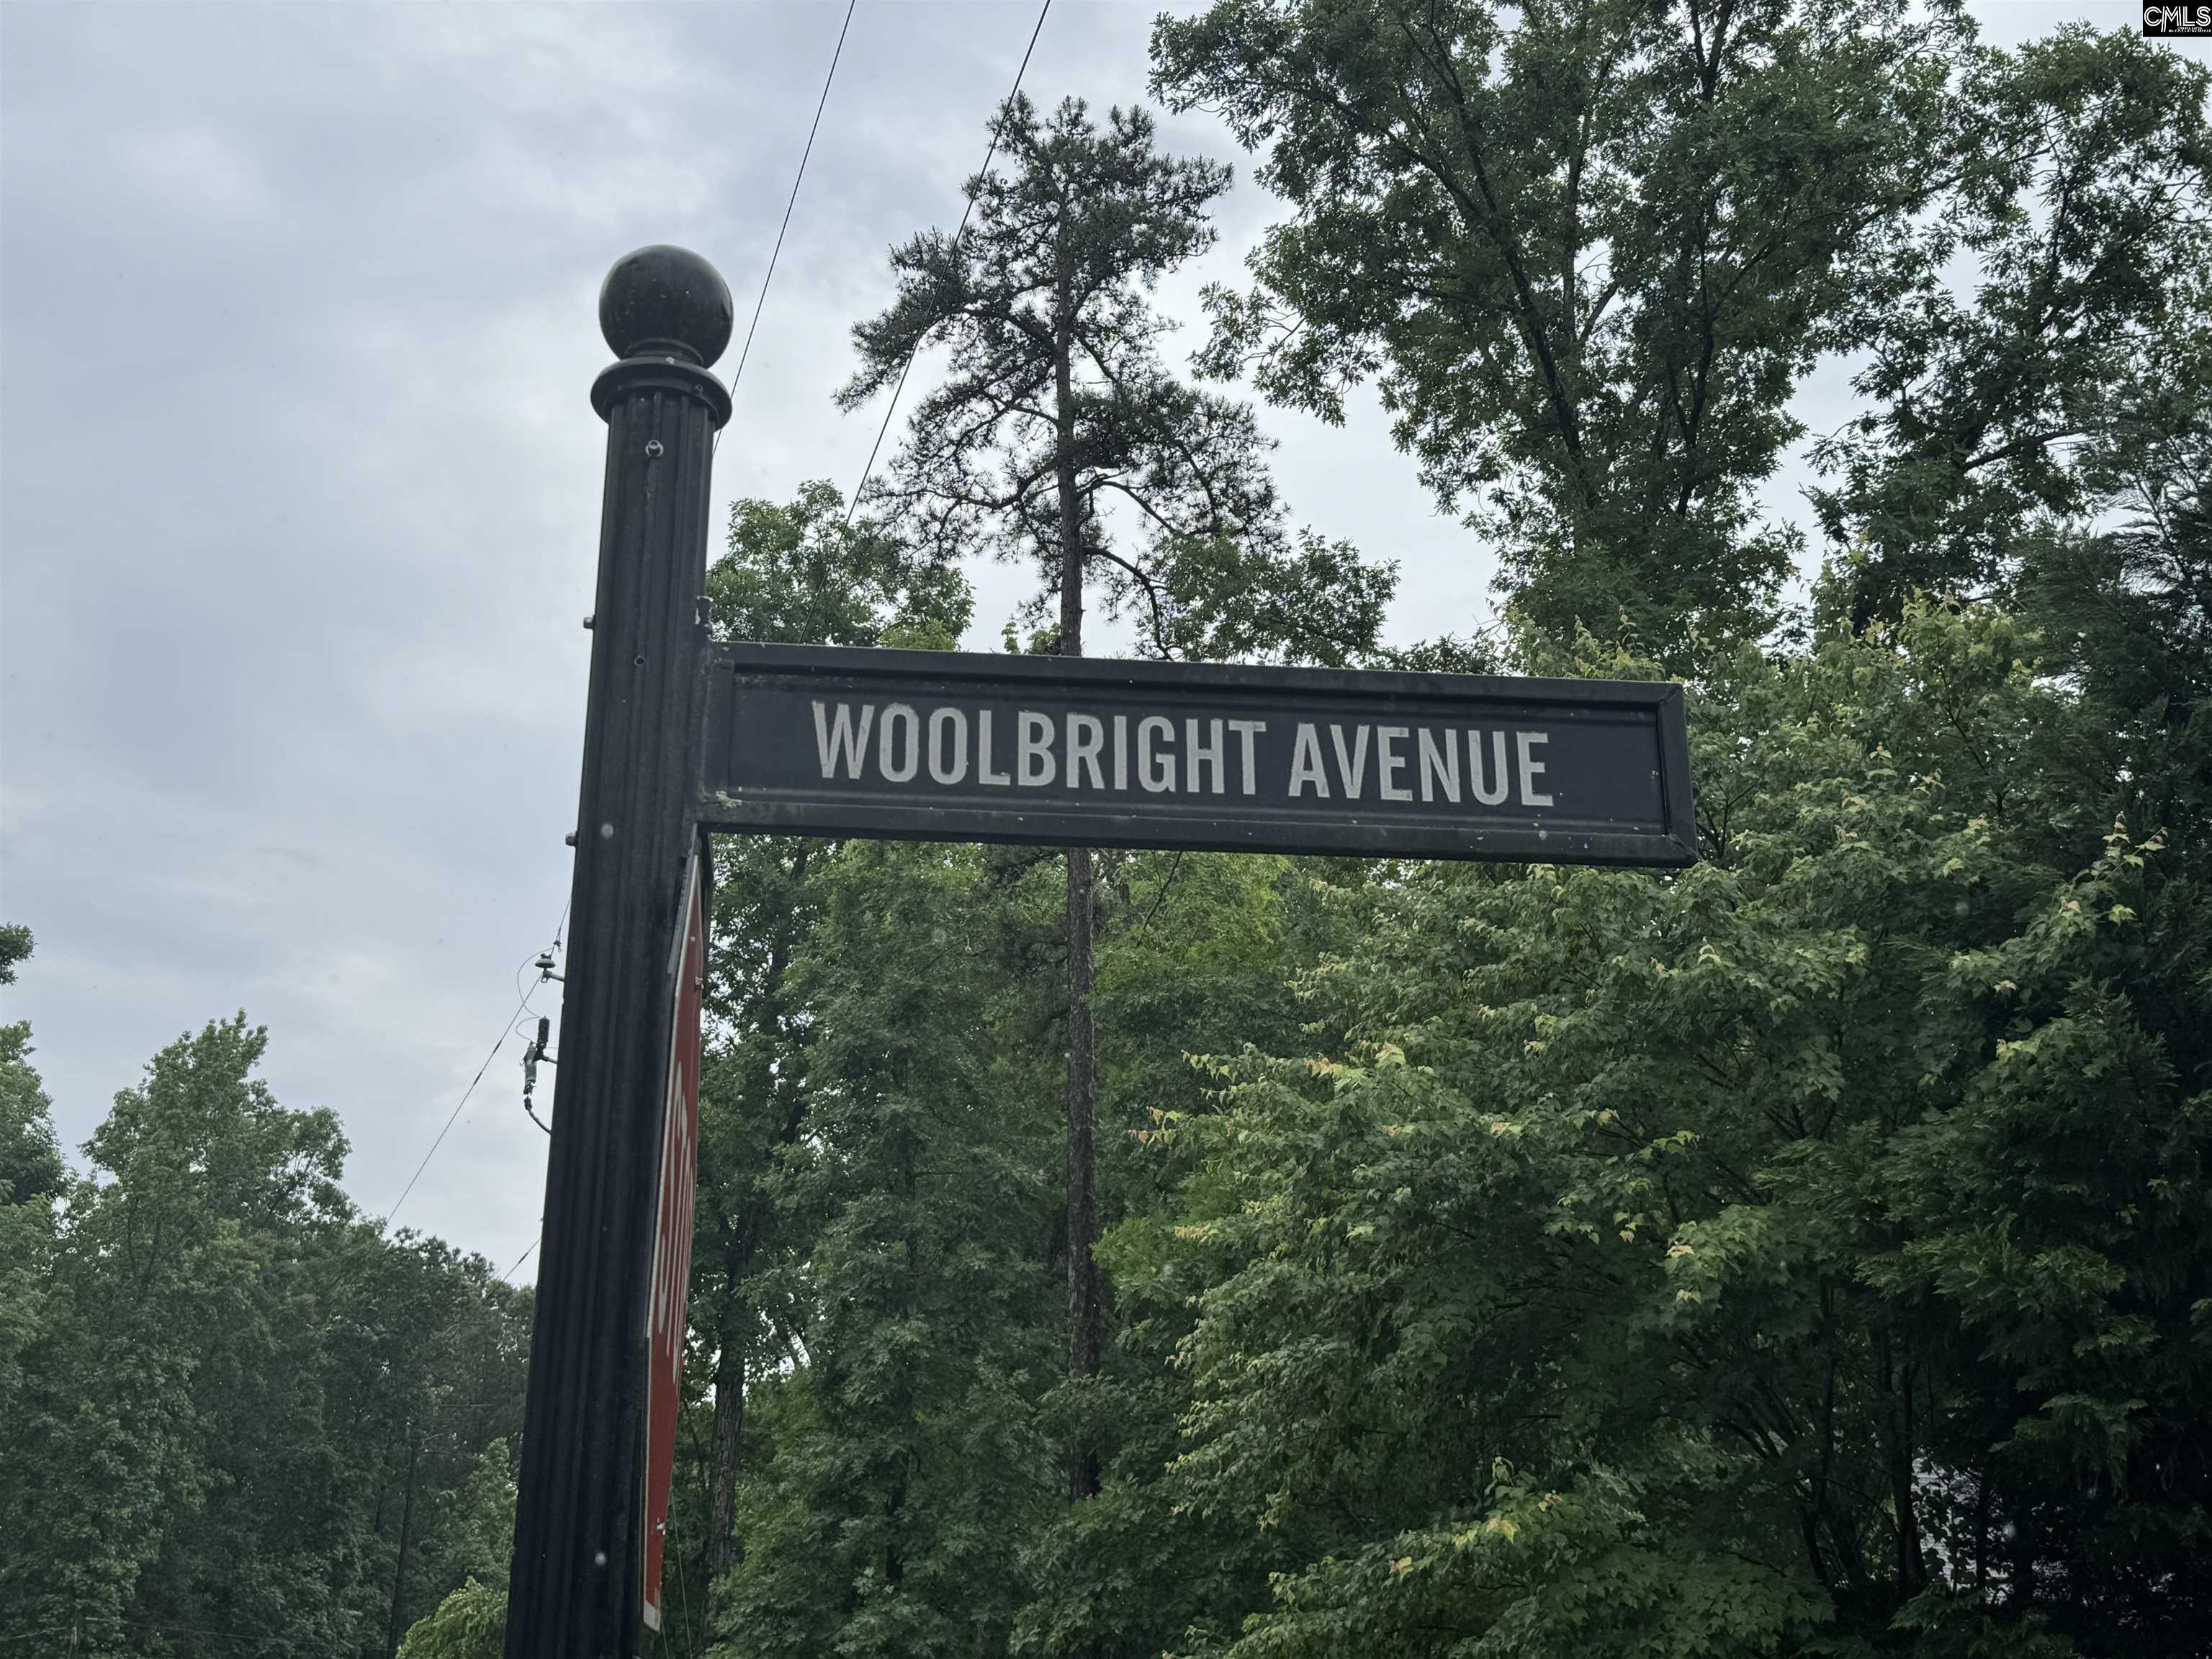 2. 106 Woolbright Avenue